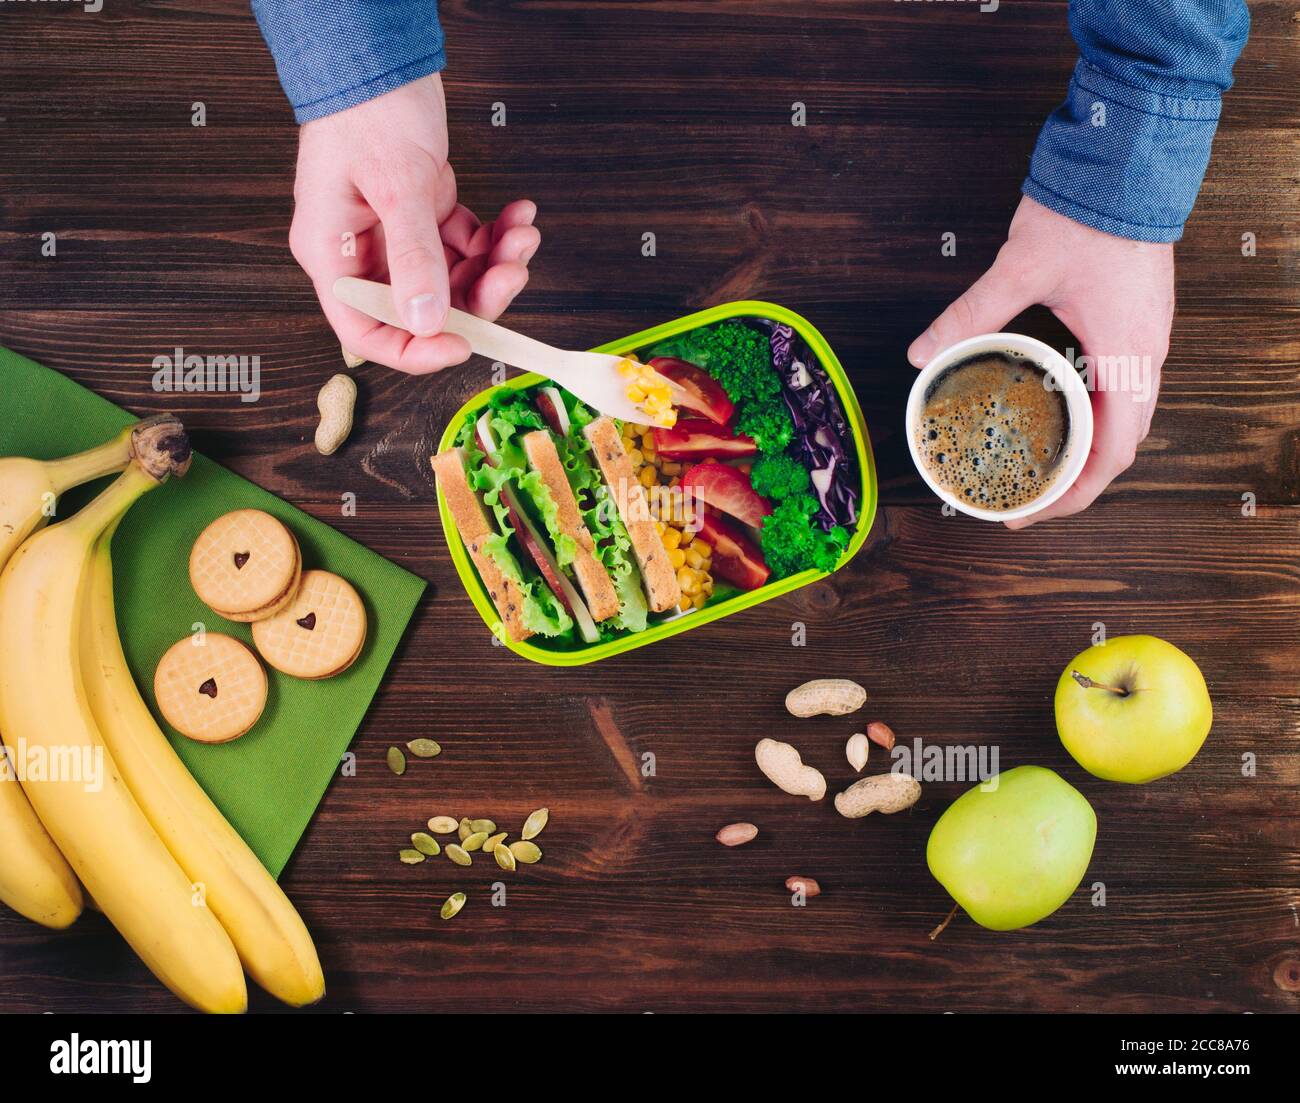 Männchen Hände essen sein Mittagessen von der Lunchbox auf rustikalem Holz Hintergrund Stockfoto